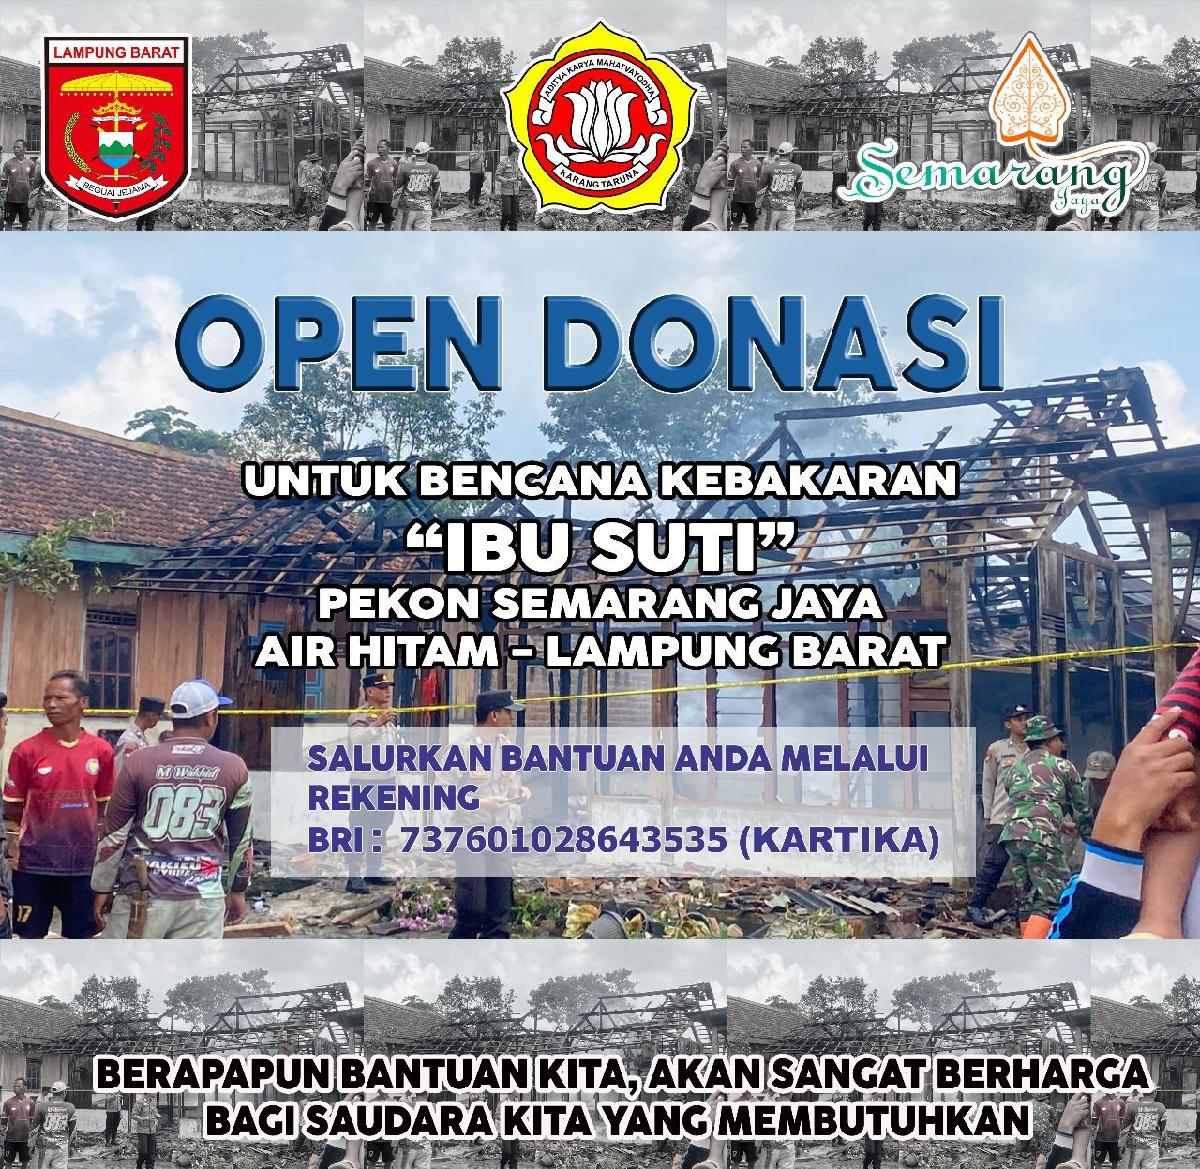 Pekon Semarang Jaya Open Donasi untuk Korban Kebakaran Rumah Mbah Suti